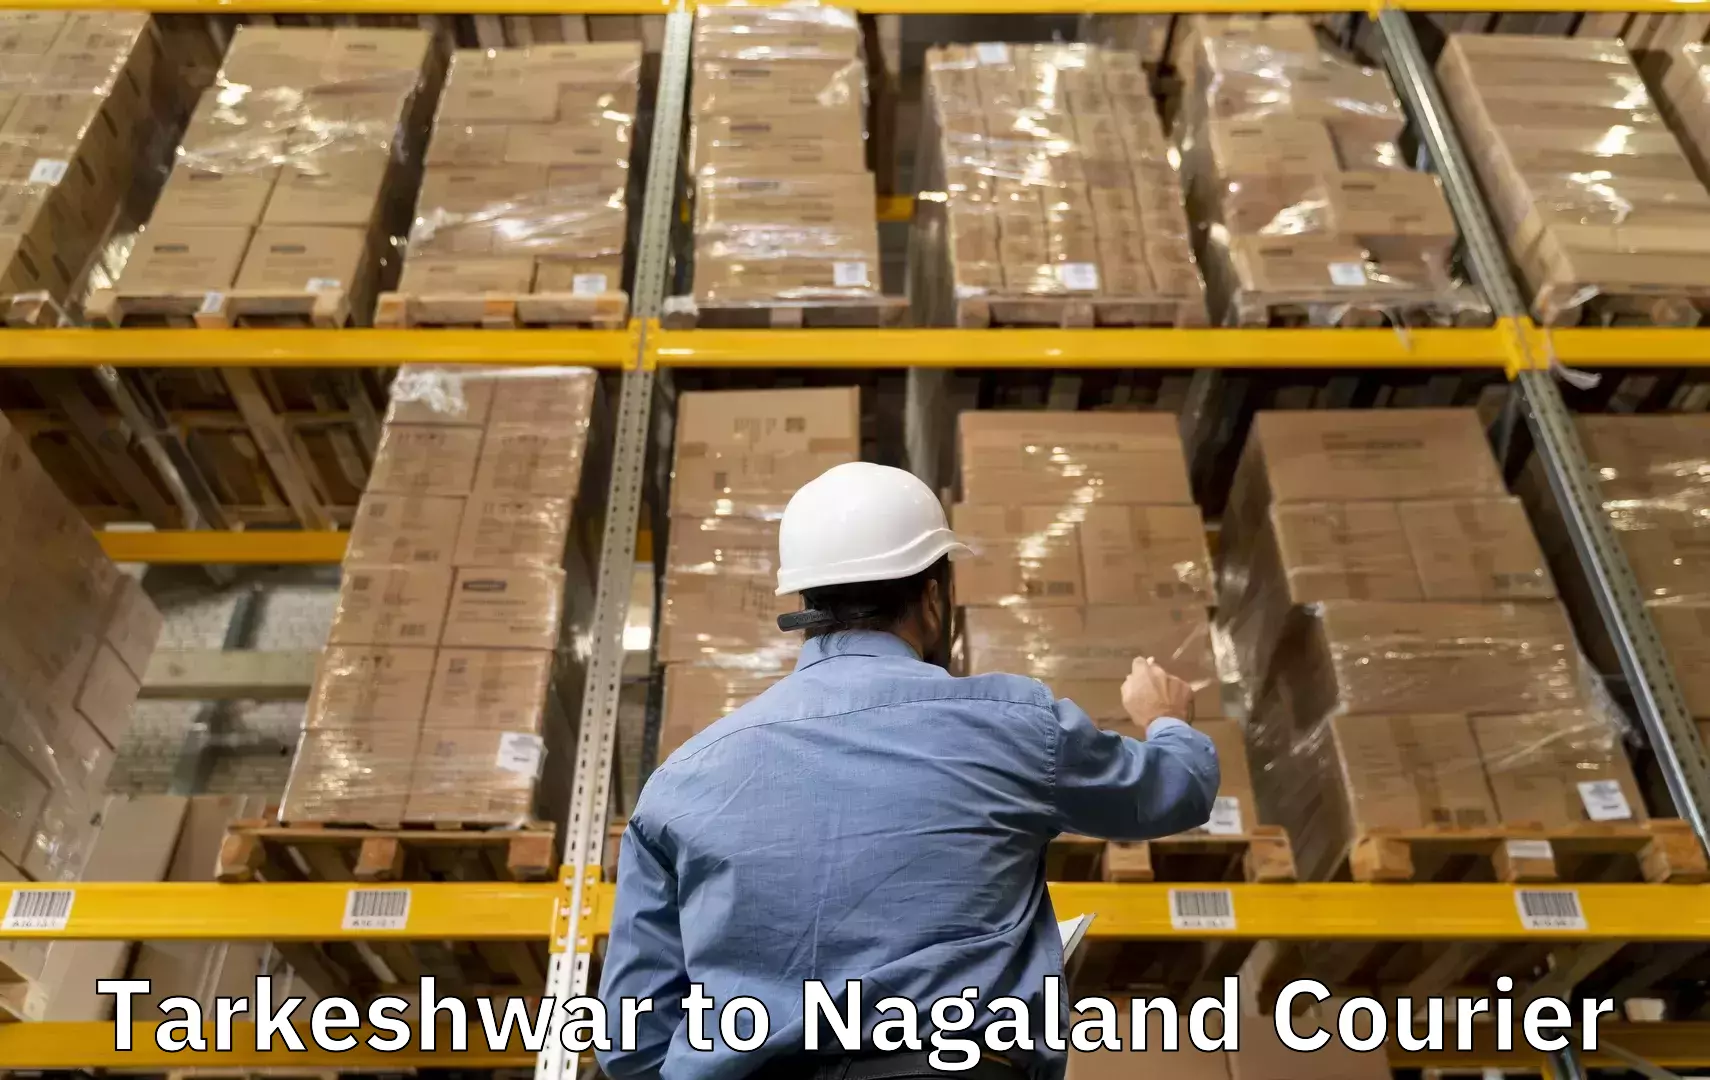 Baggage transport management Tarkeshwar to Nagaland